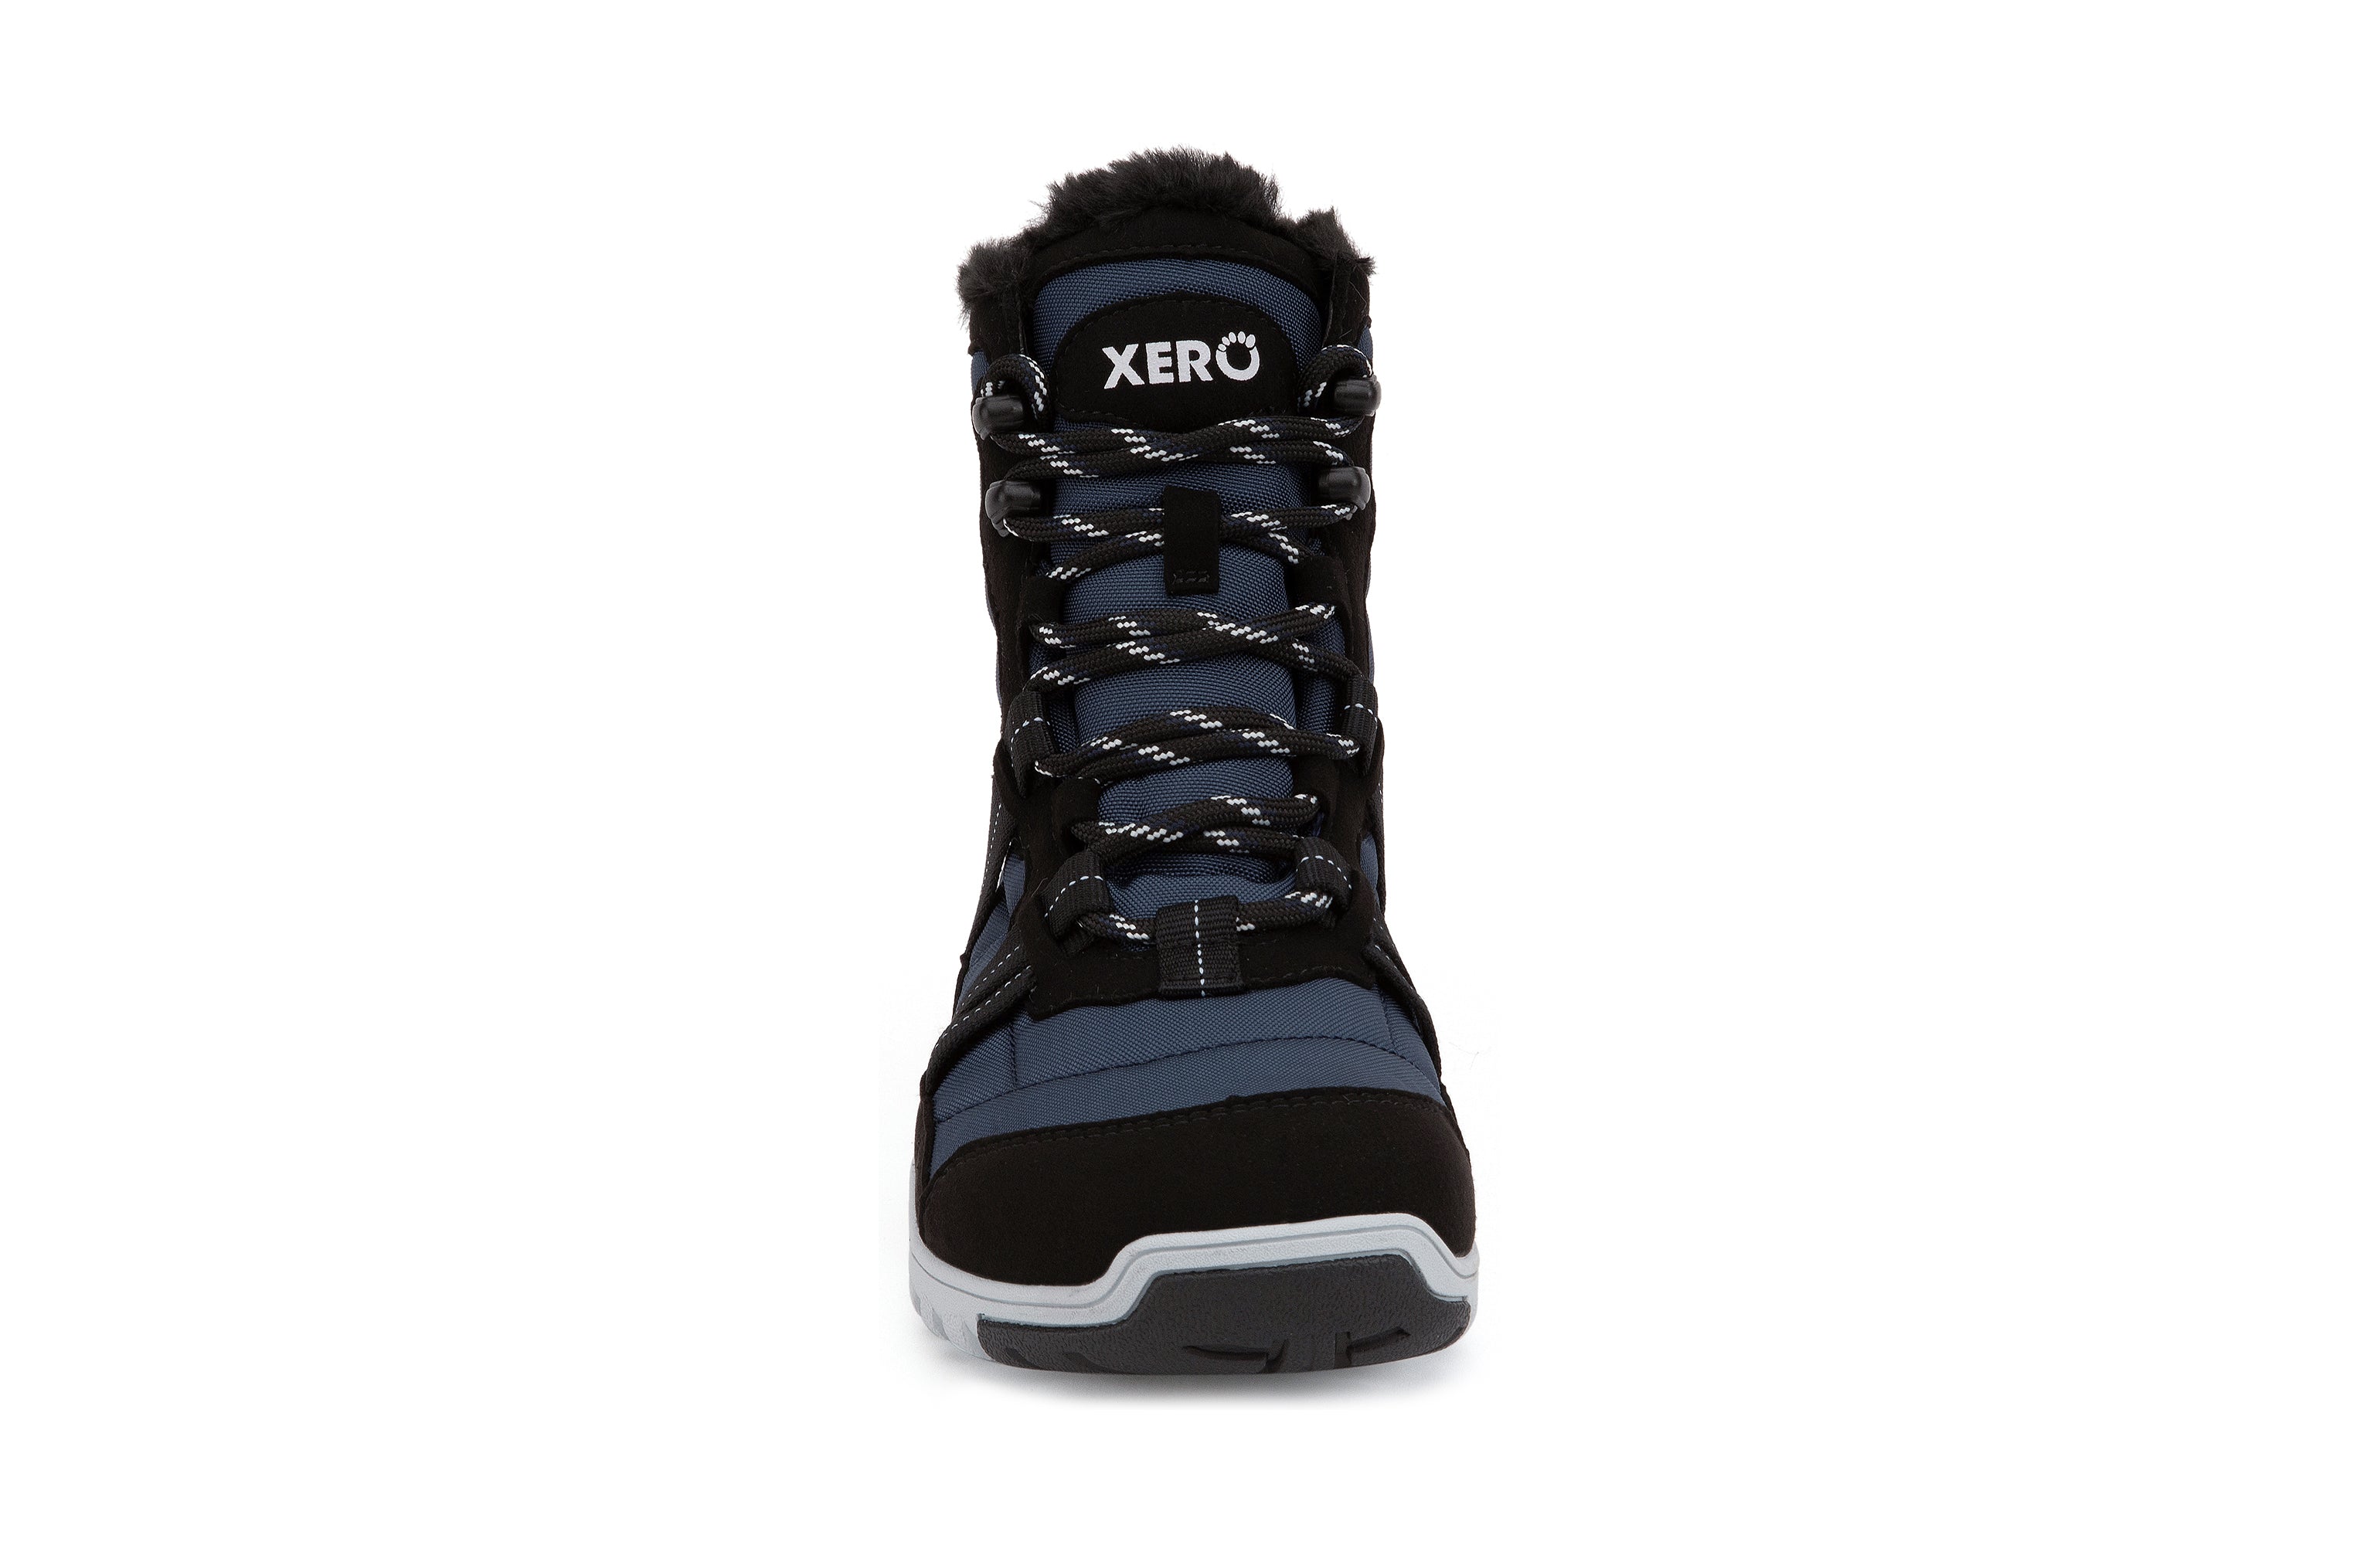 Xero Shoes Alpine Womens barfods vinterstøvler til kvinder i farven navy / black, forfra